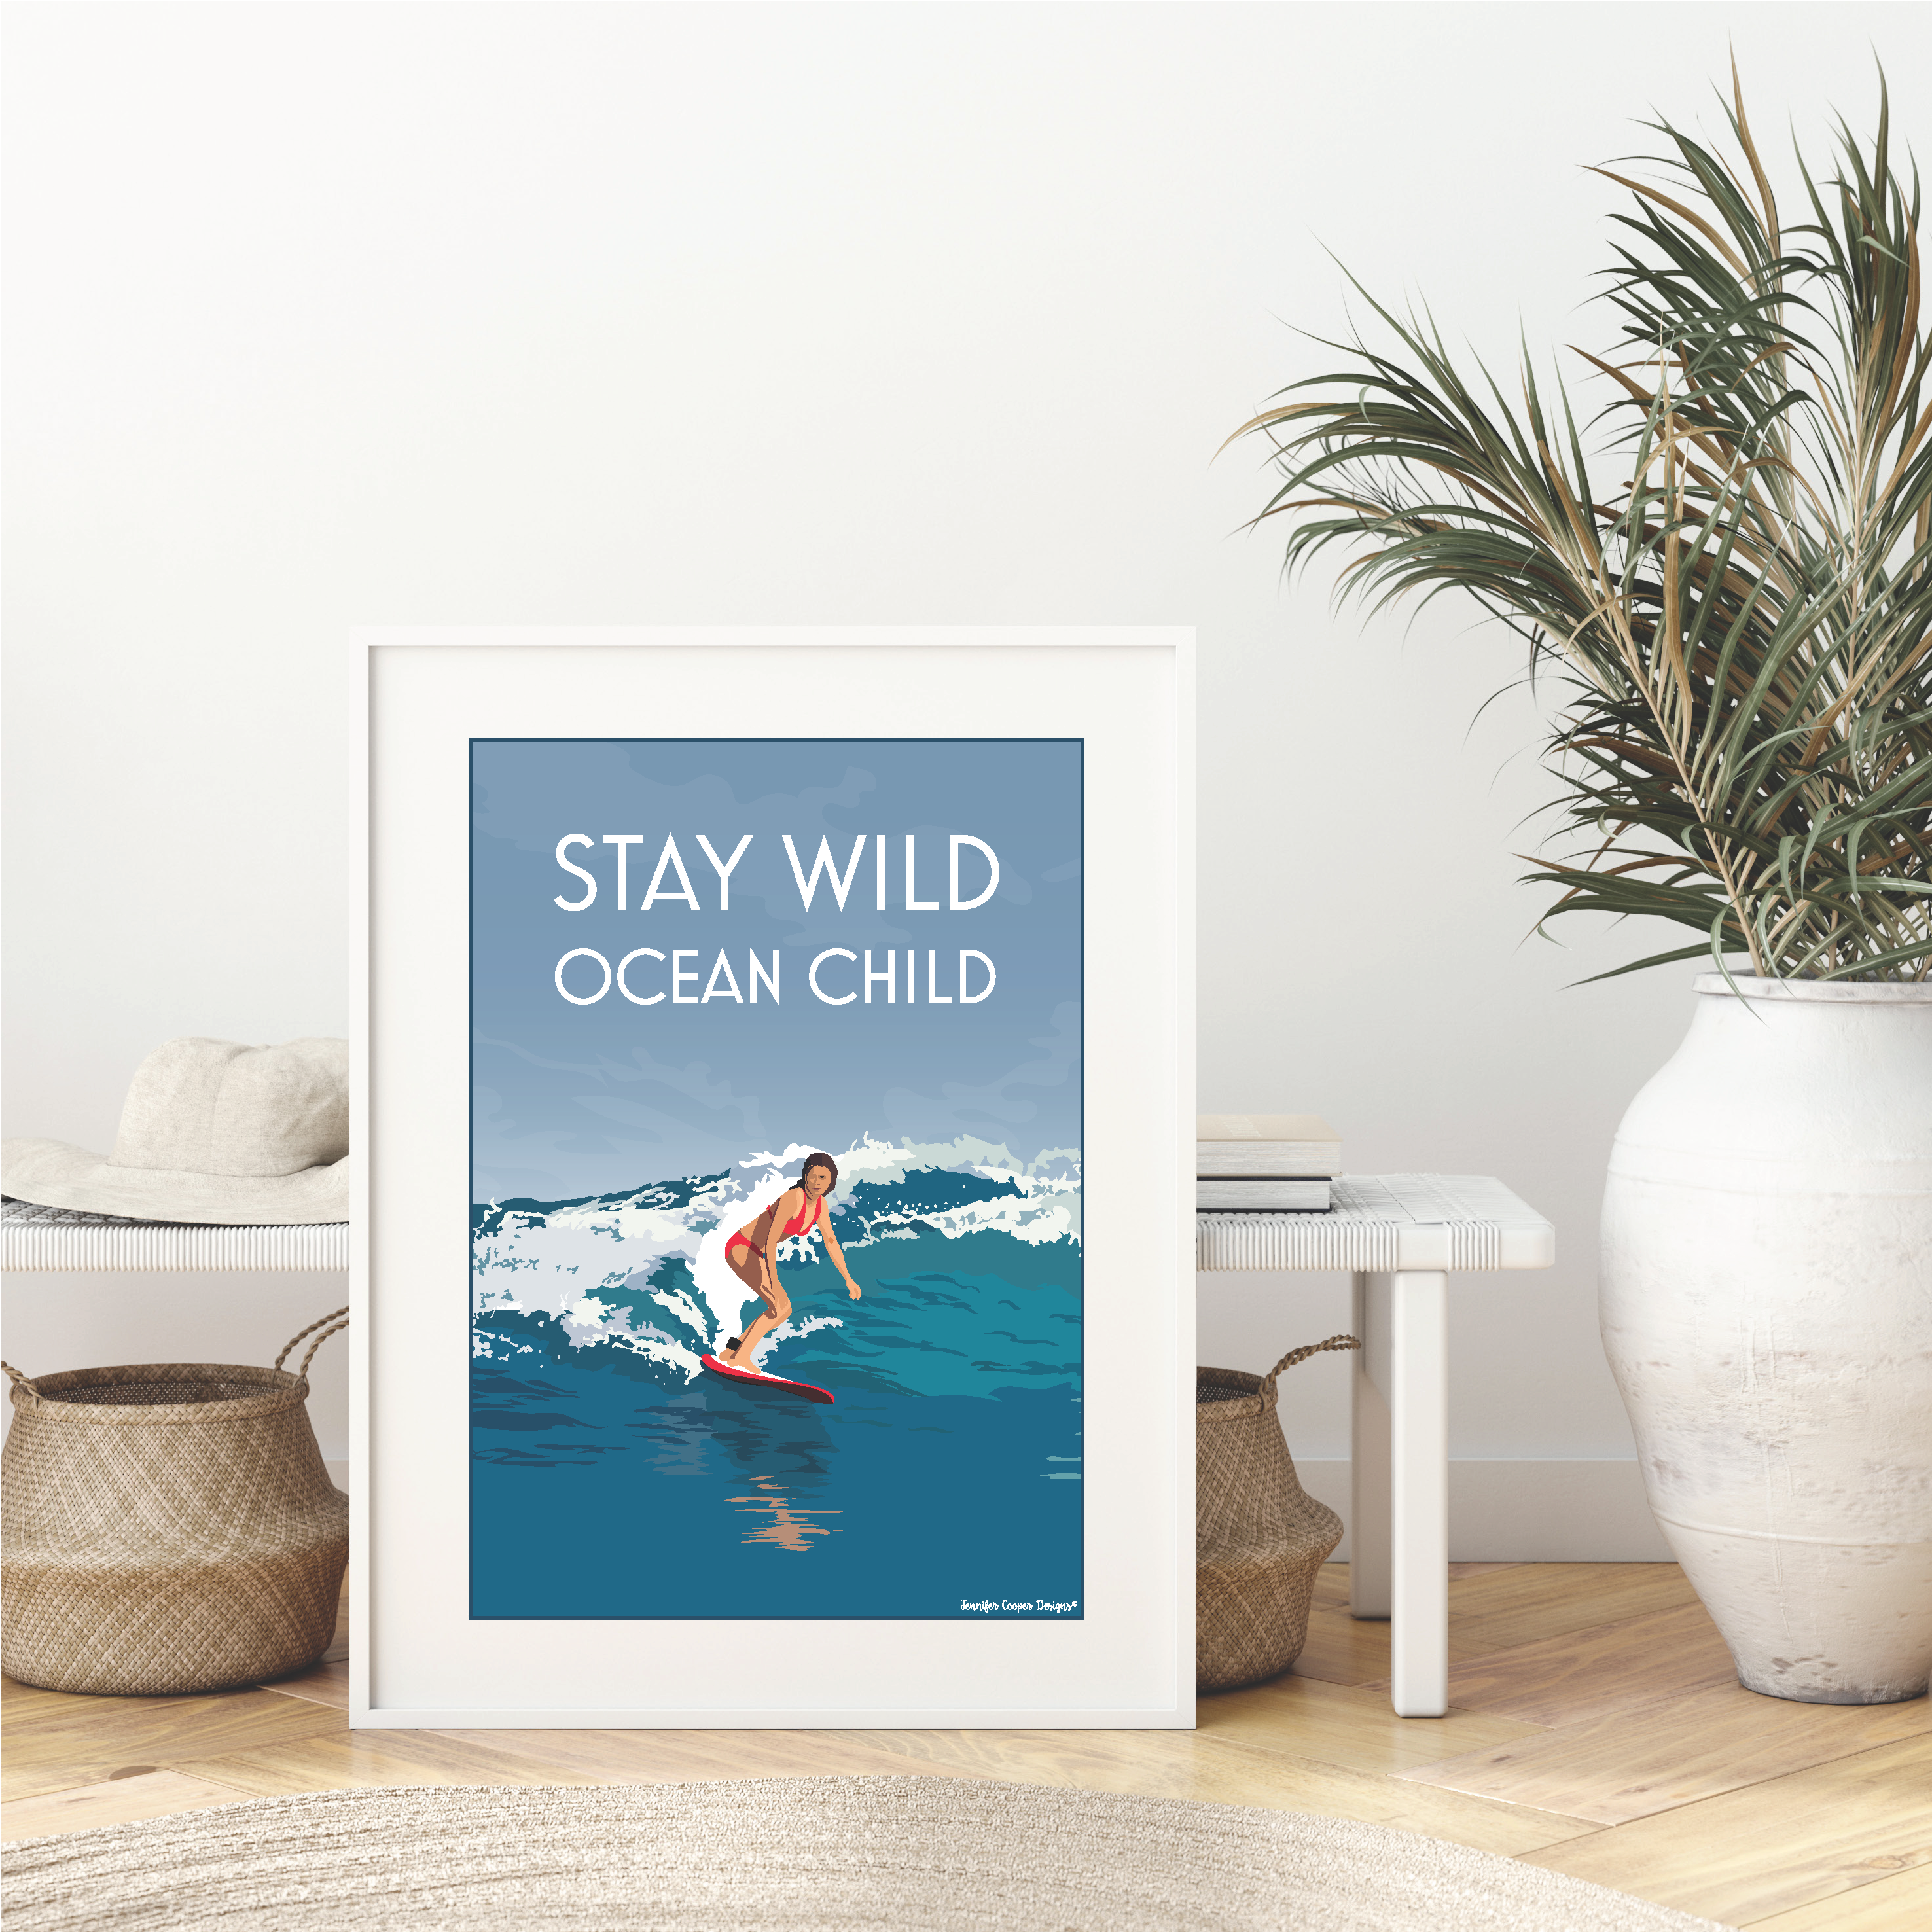 Stay Wild Ocean Child - Surfer